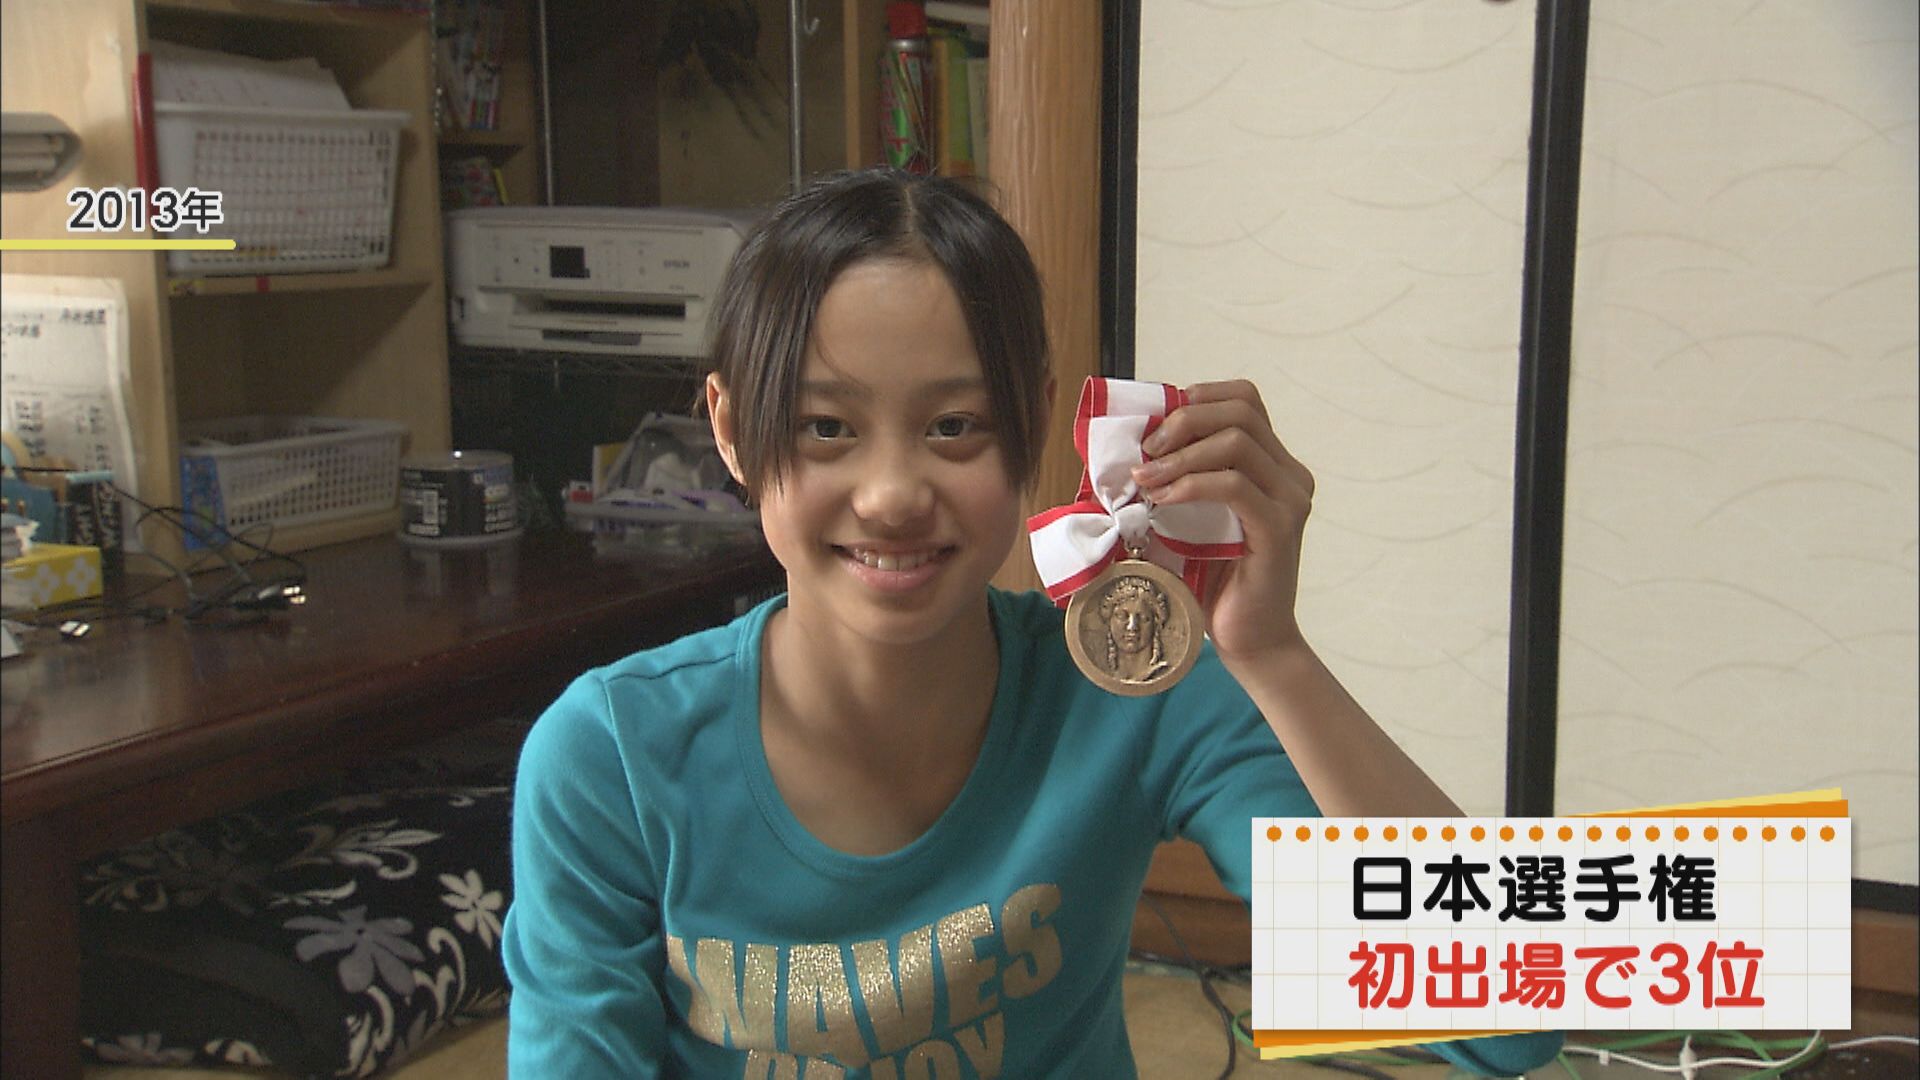 2013年（中学1年生）、日本選手権に初出場・3位でメダルを獲得